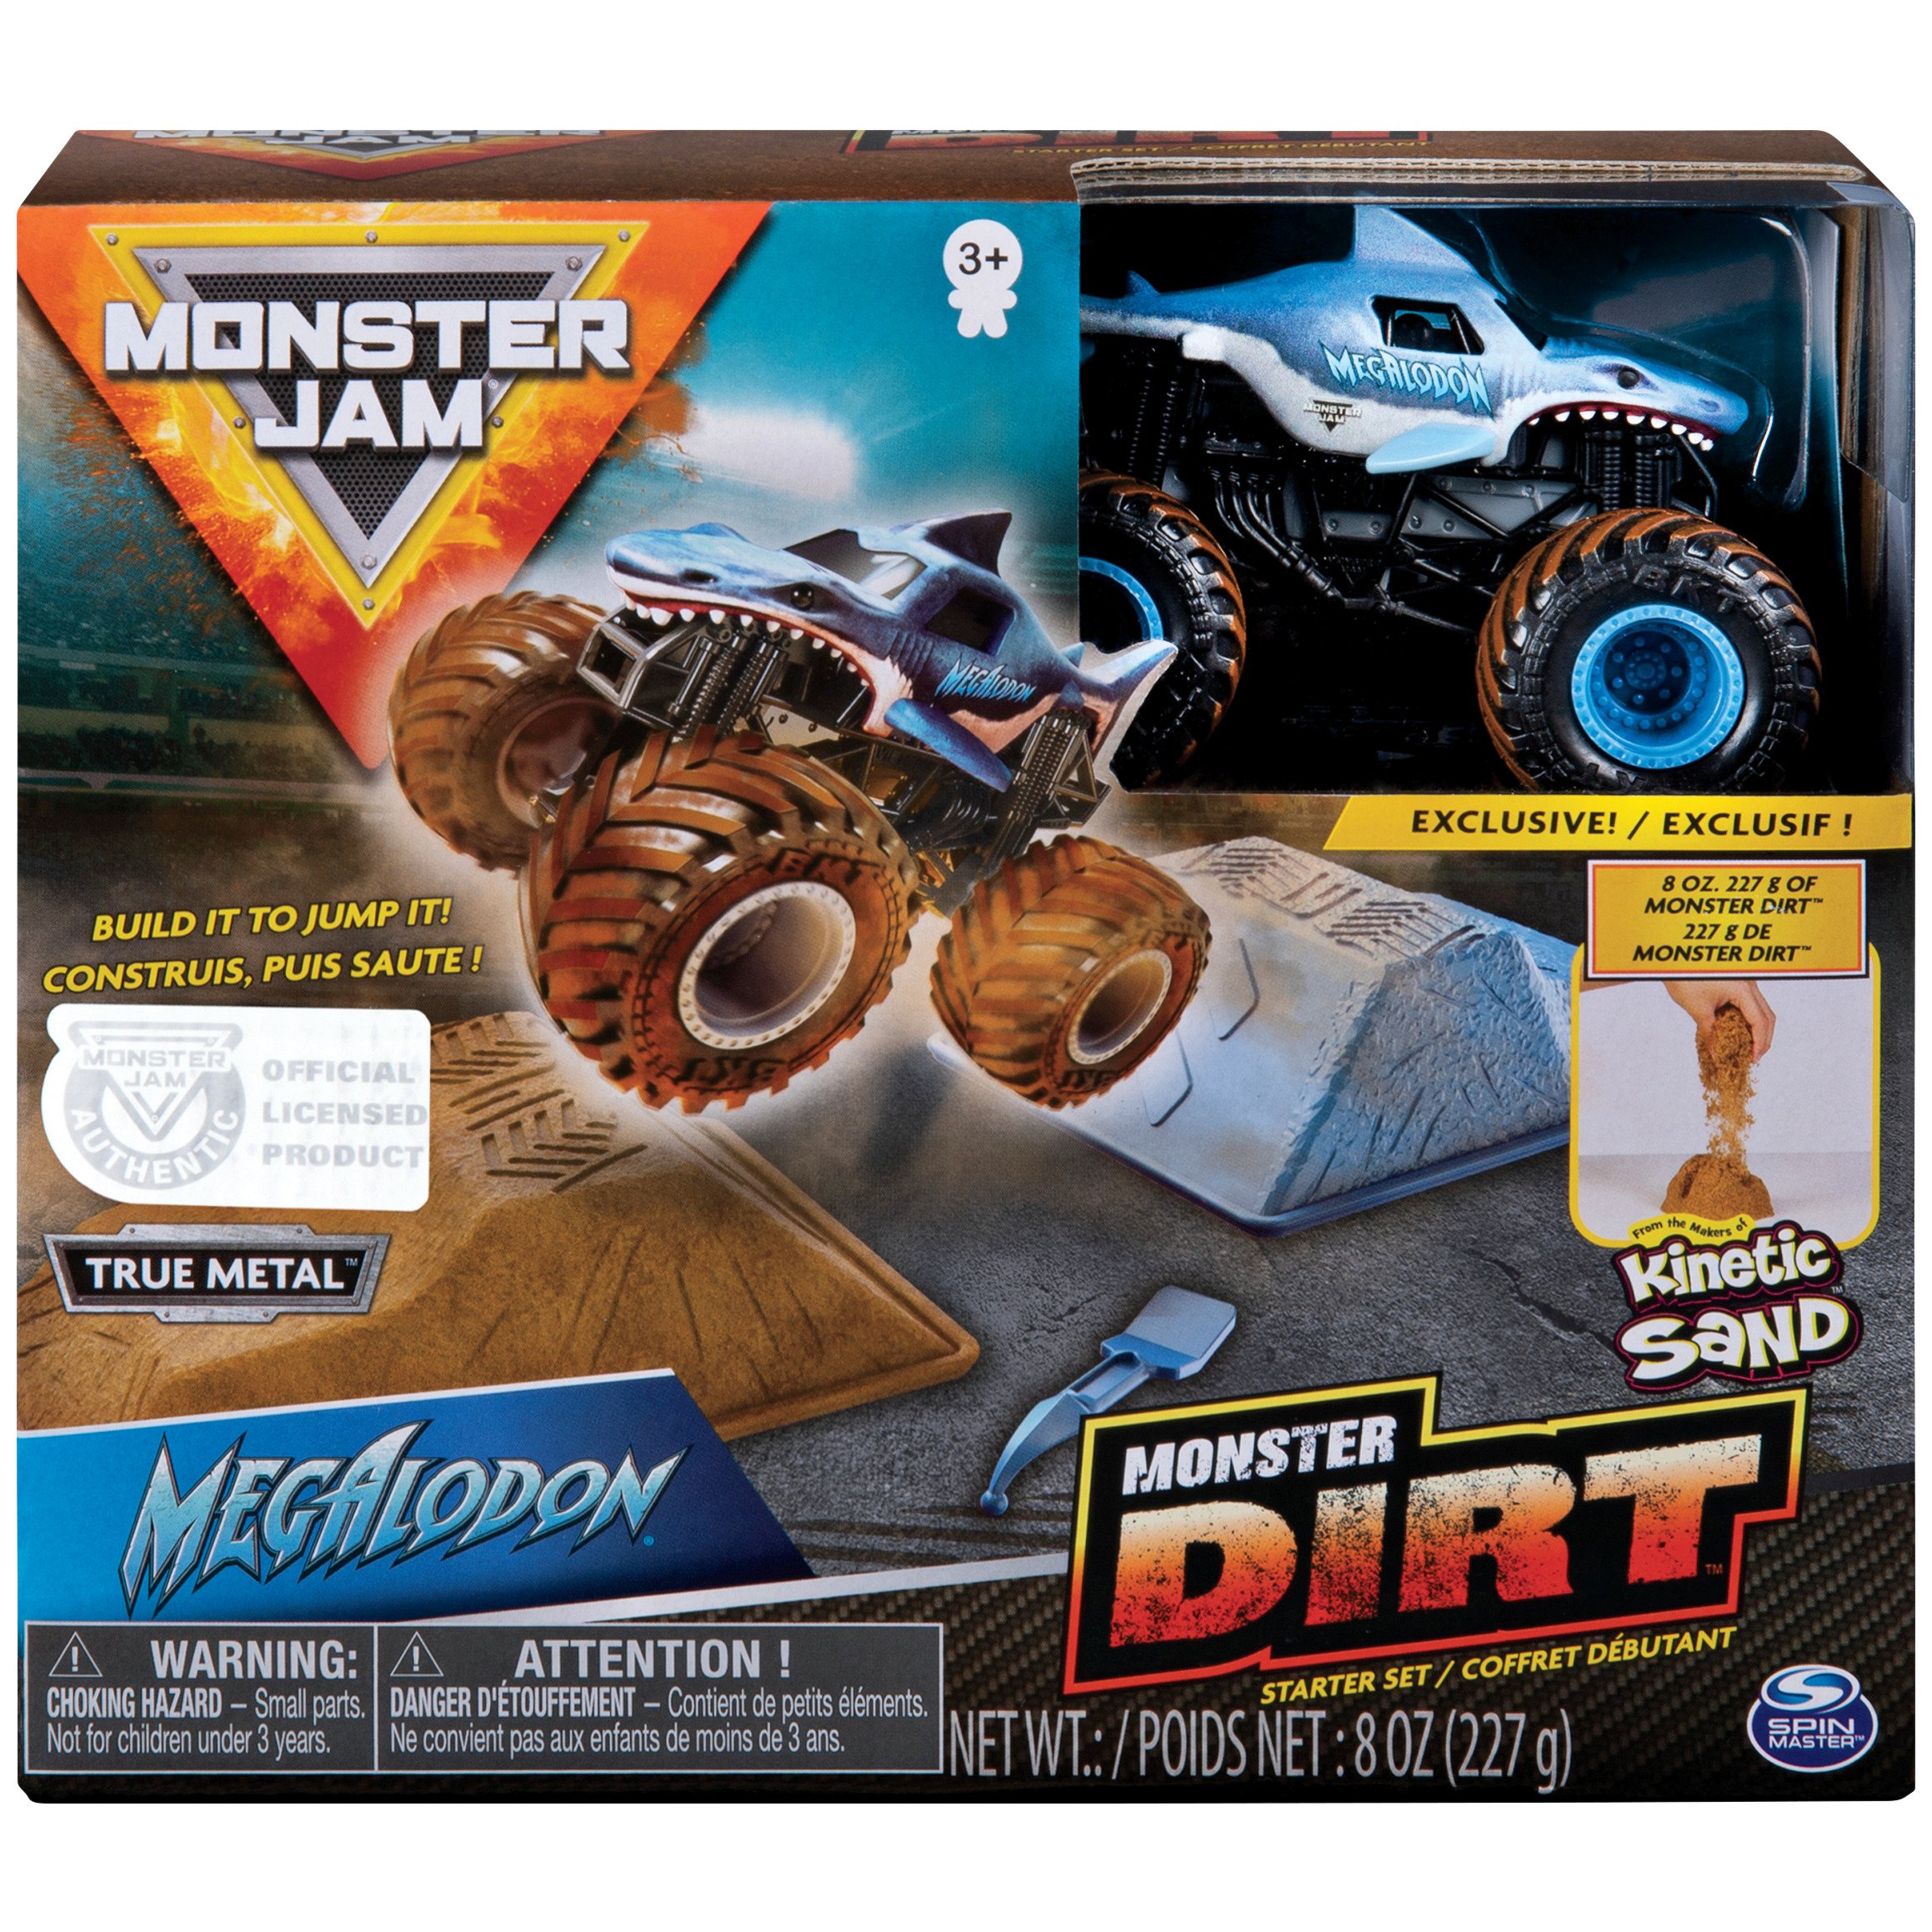 Hot Wheels Monster Trucks Arena Smashers Bone Shaker Ultimate Crush Yard  Playset